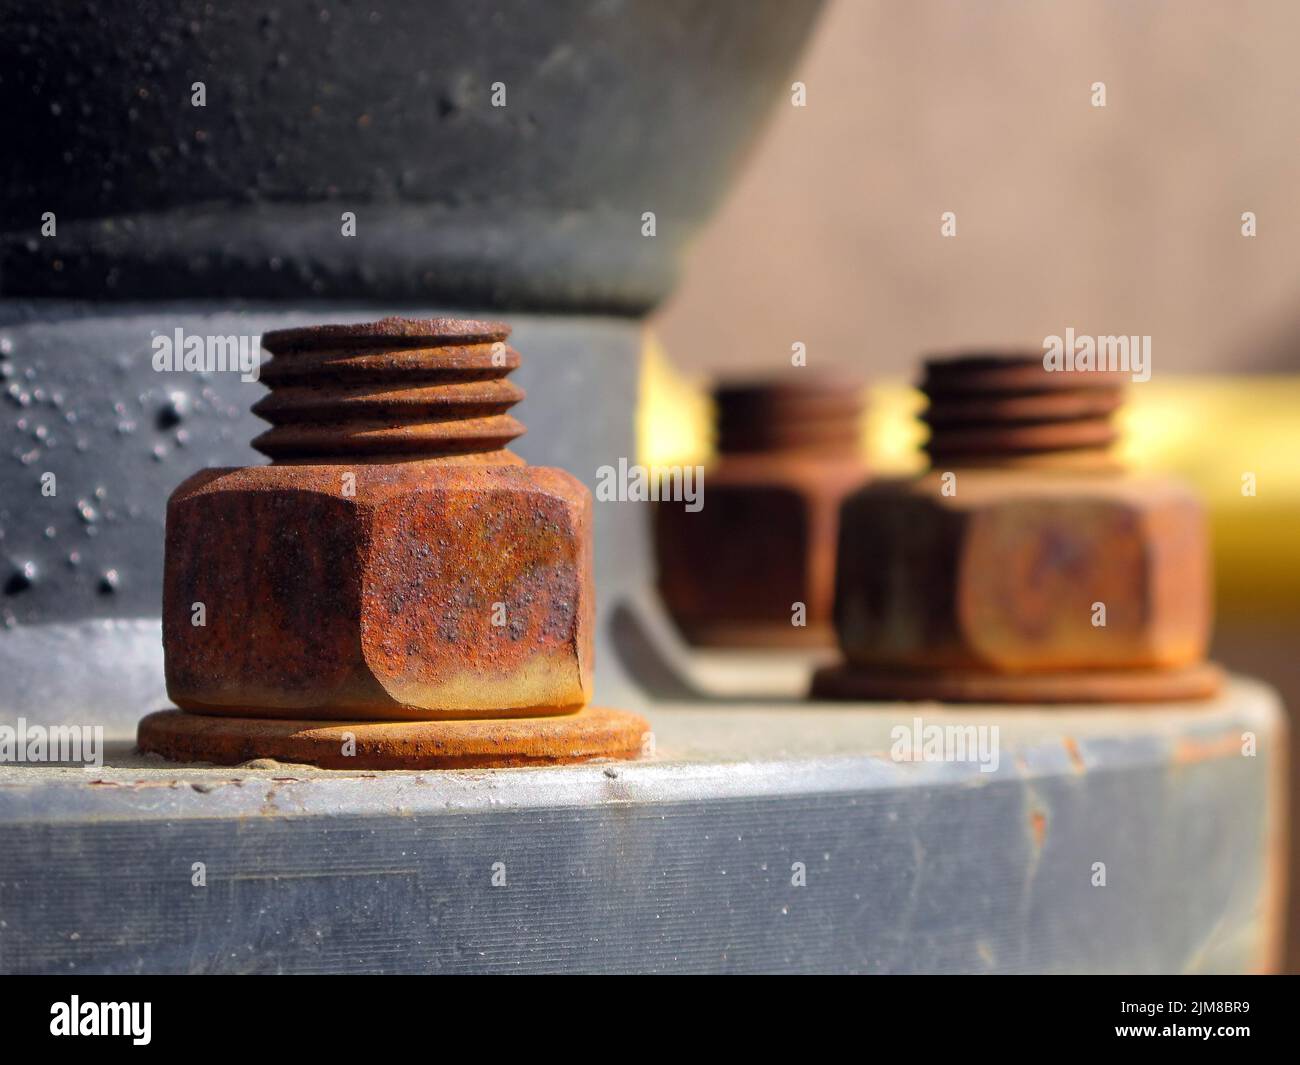 Old rusty metal nut on iron water valve Stock Photo